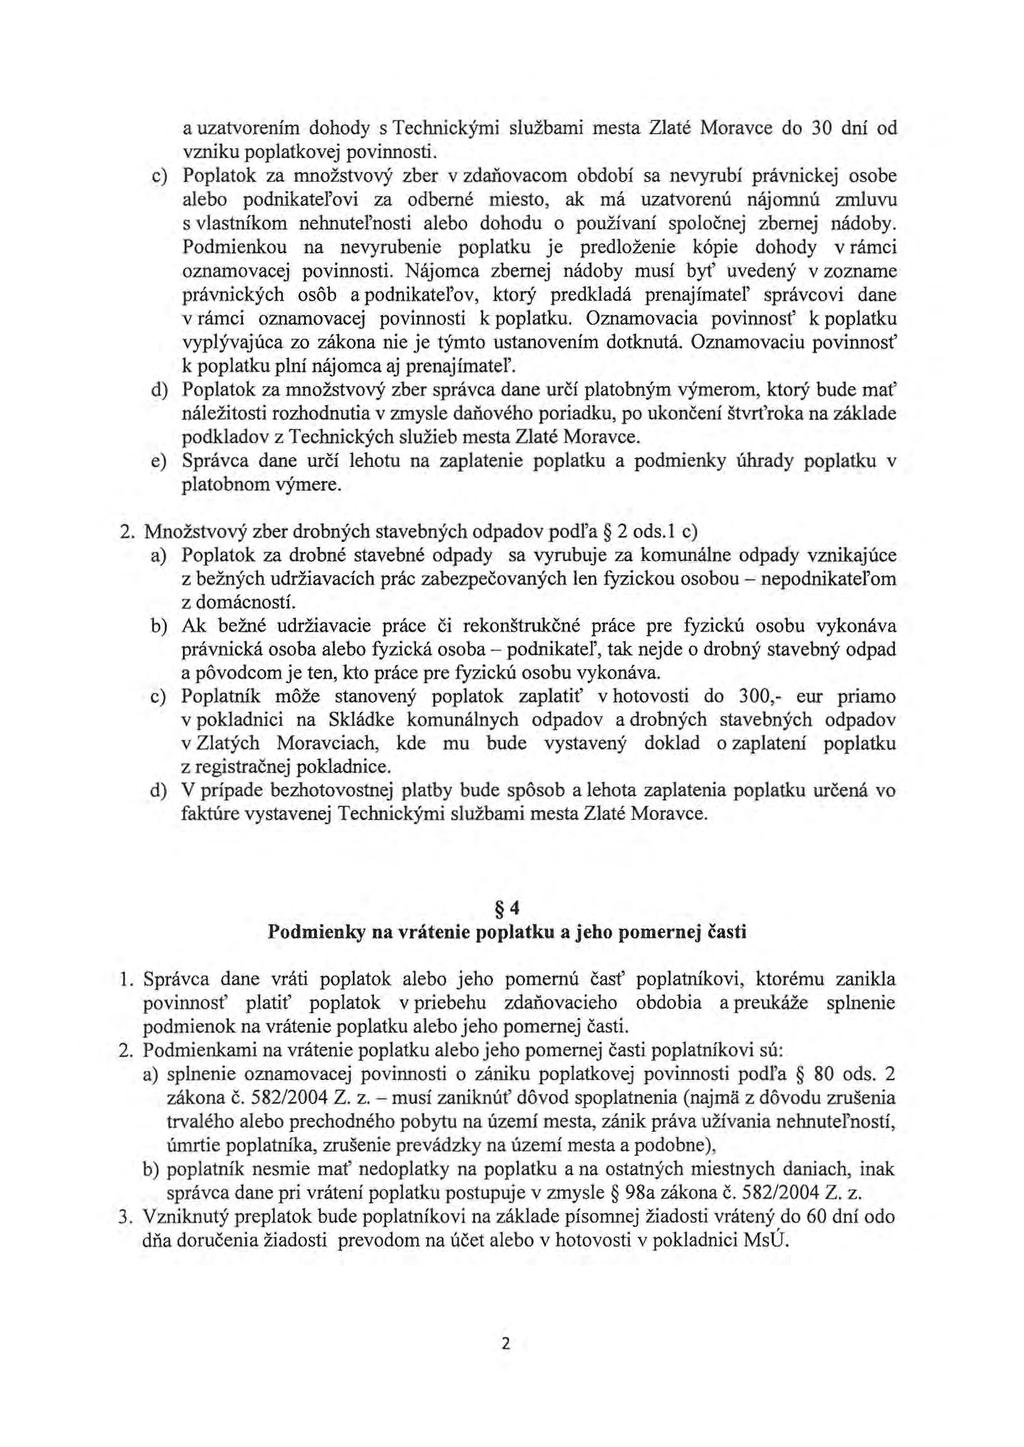 a uzatvorením dohody s Technickými službami mesta Zlaté Moravce do 30 dní od vzniku poplatkovej povinnosti.